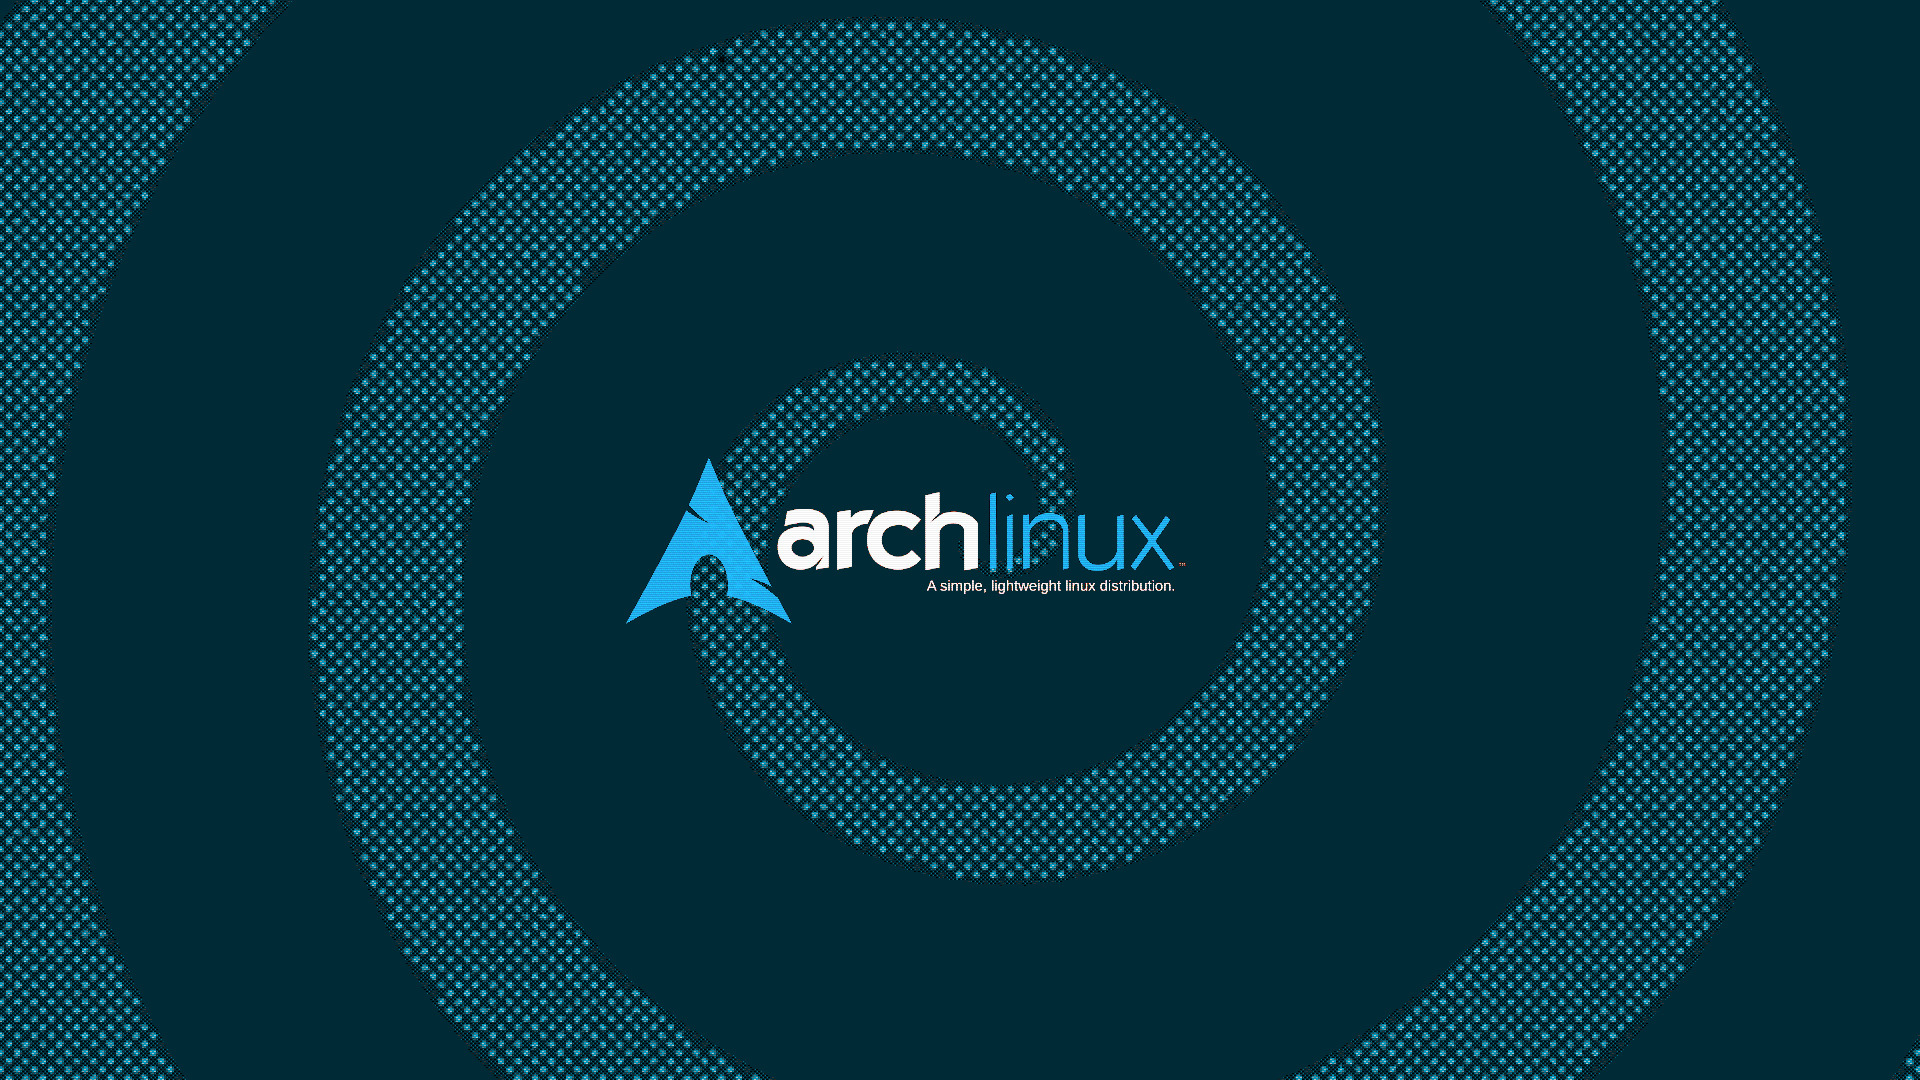 arch linux linux distros